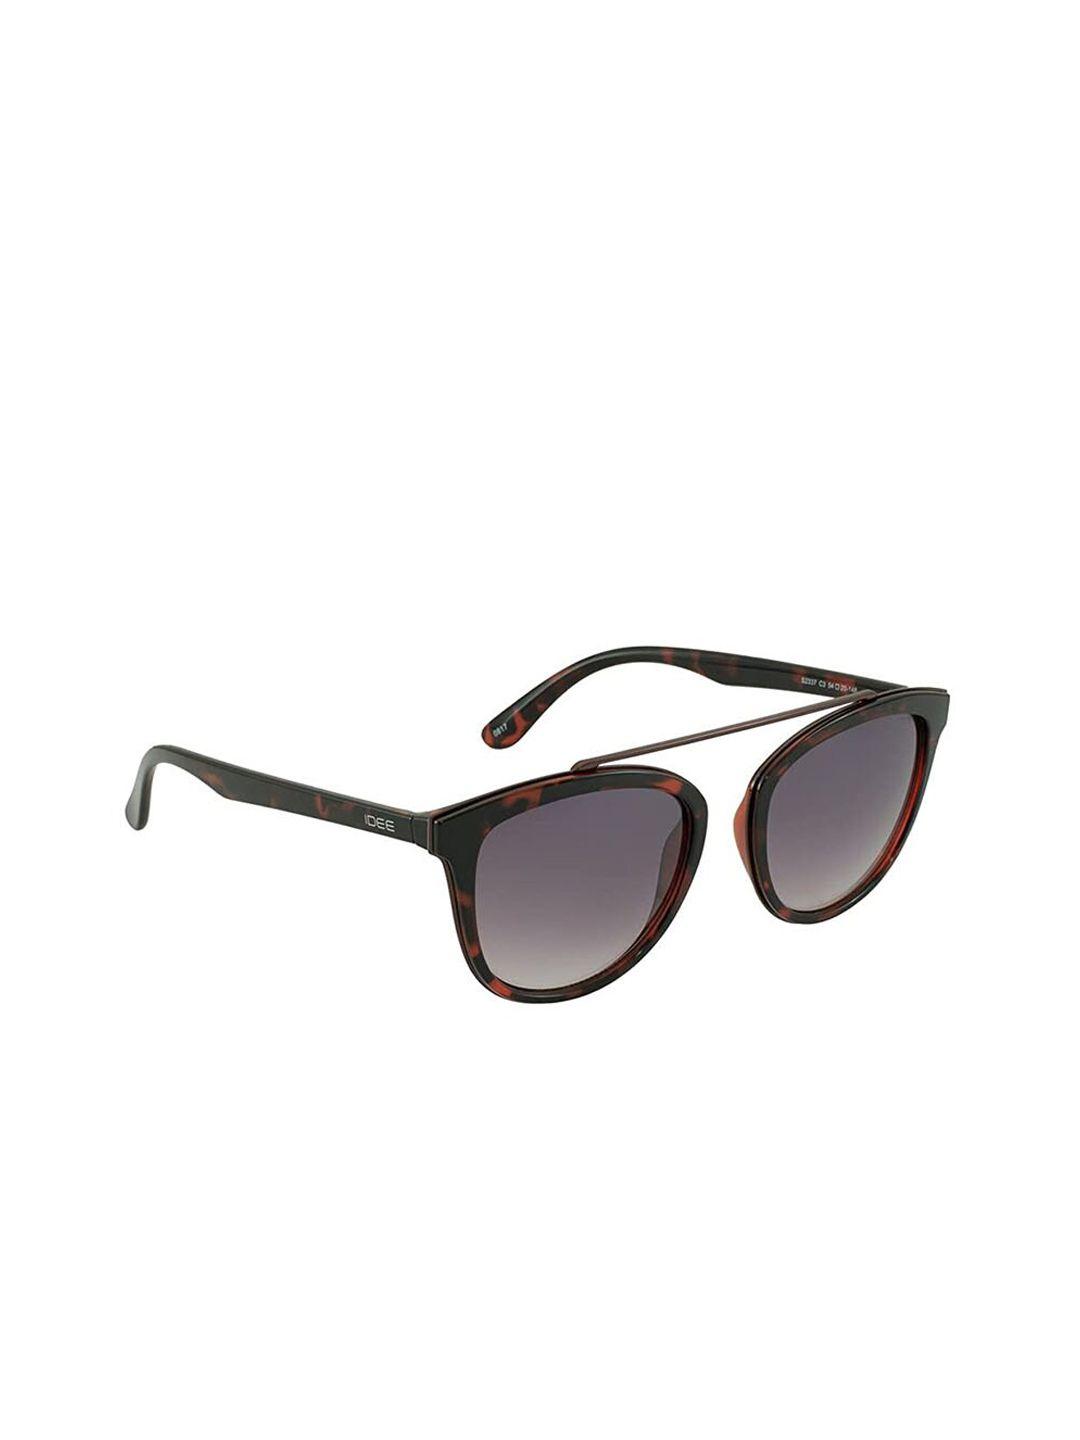 idee unisex square sunglasses ids2337-c3sg